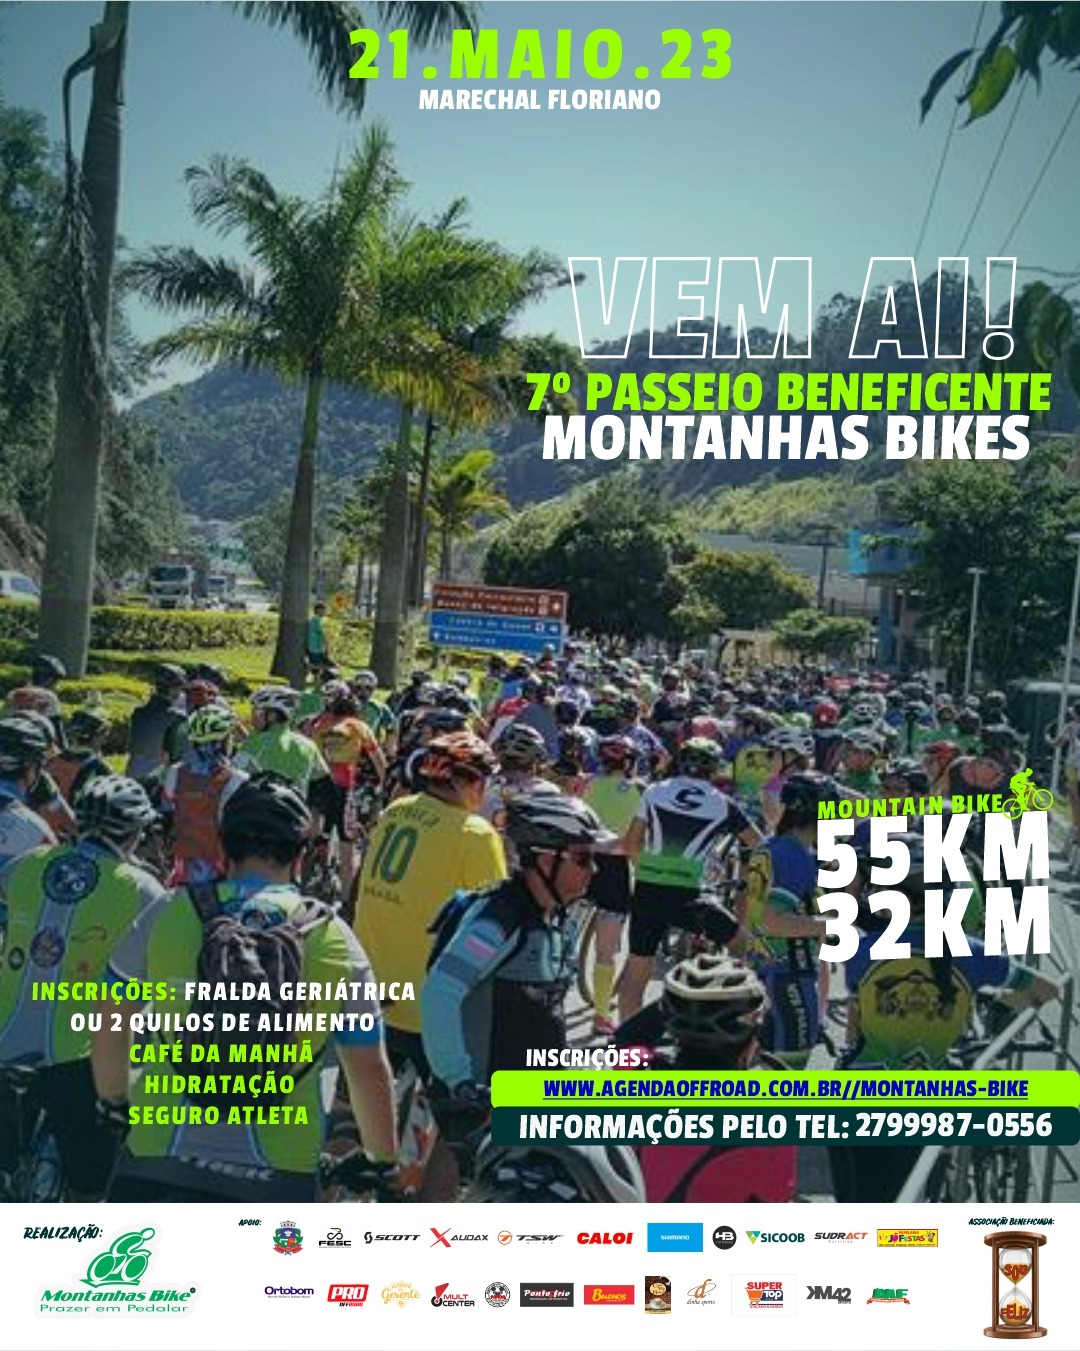 7º Passeio Beneficente Montanhas Bike reunirá centenas de participantes em Marechal Floriano.